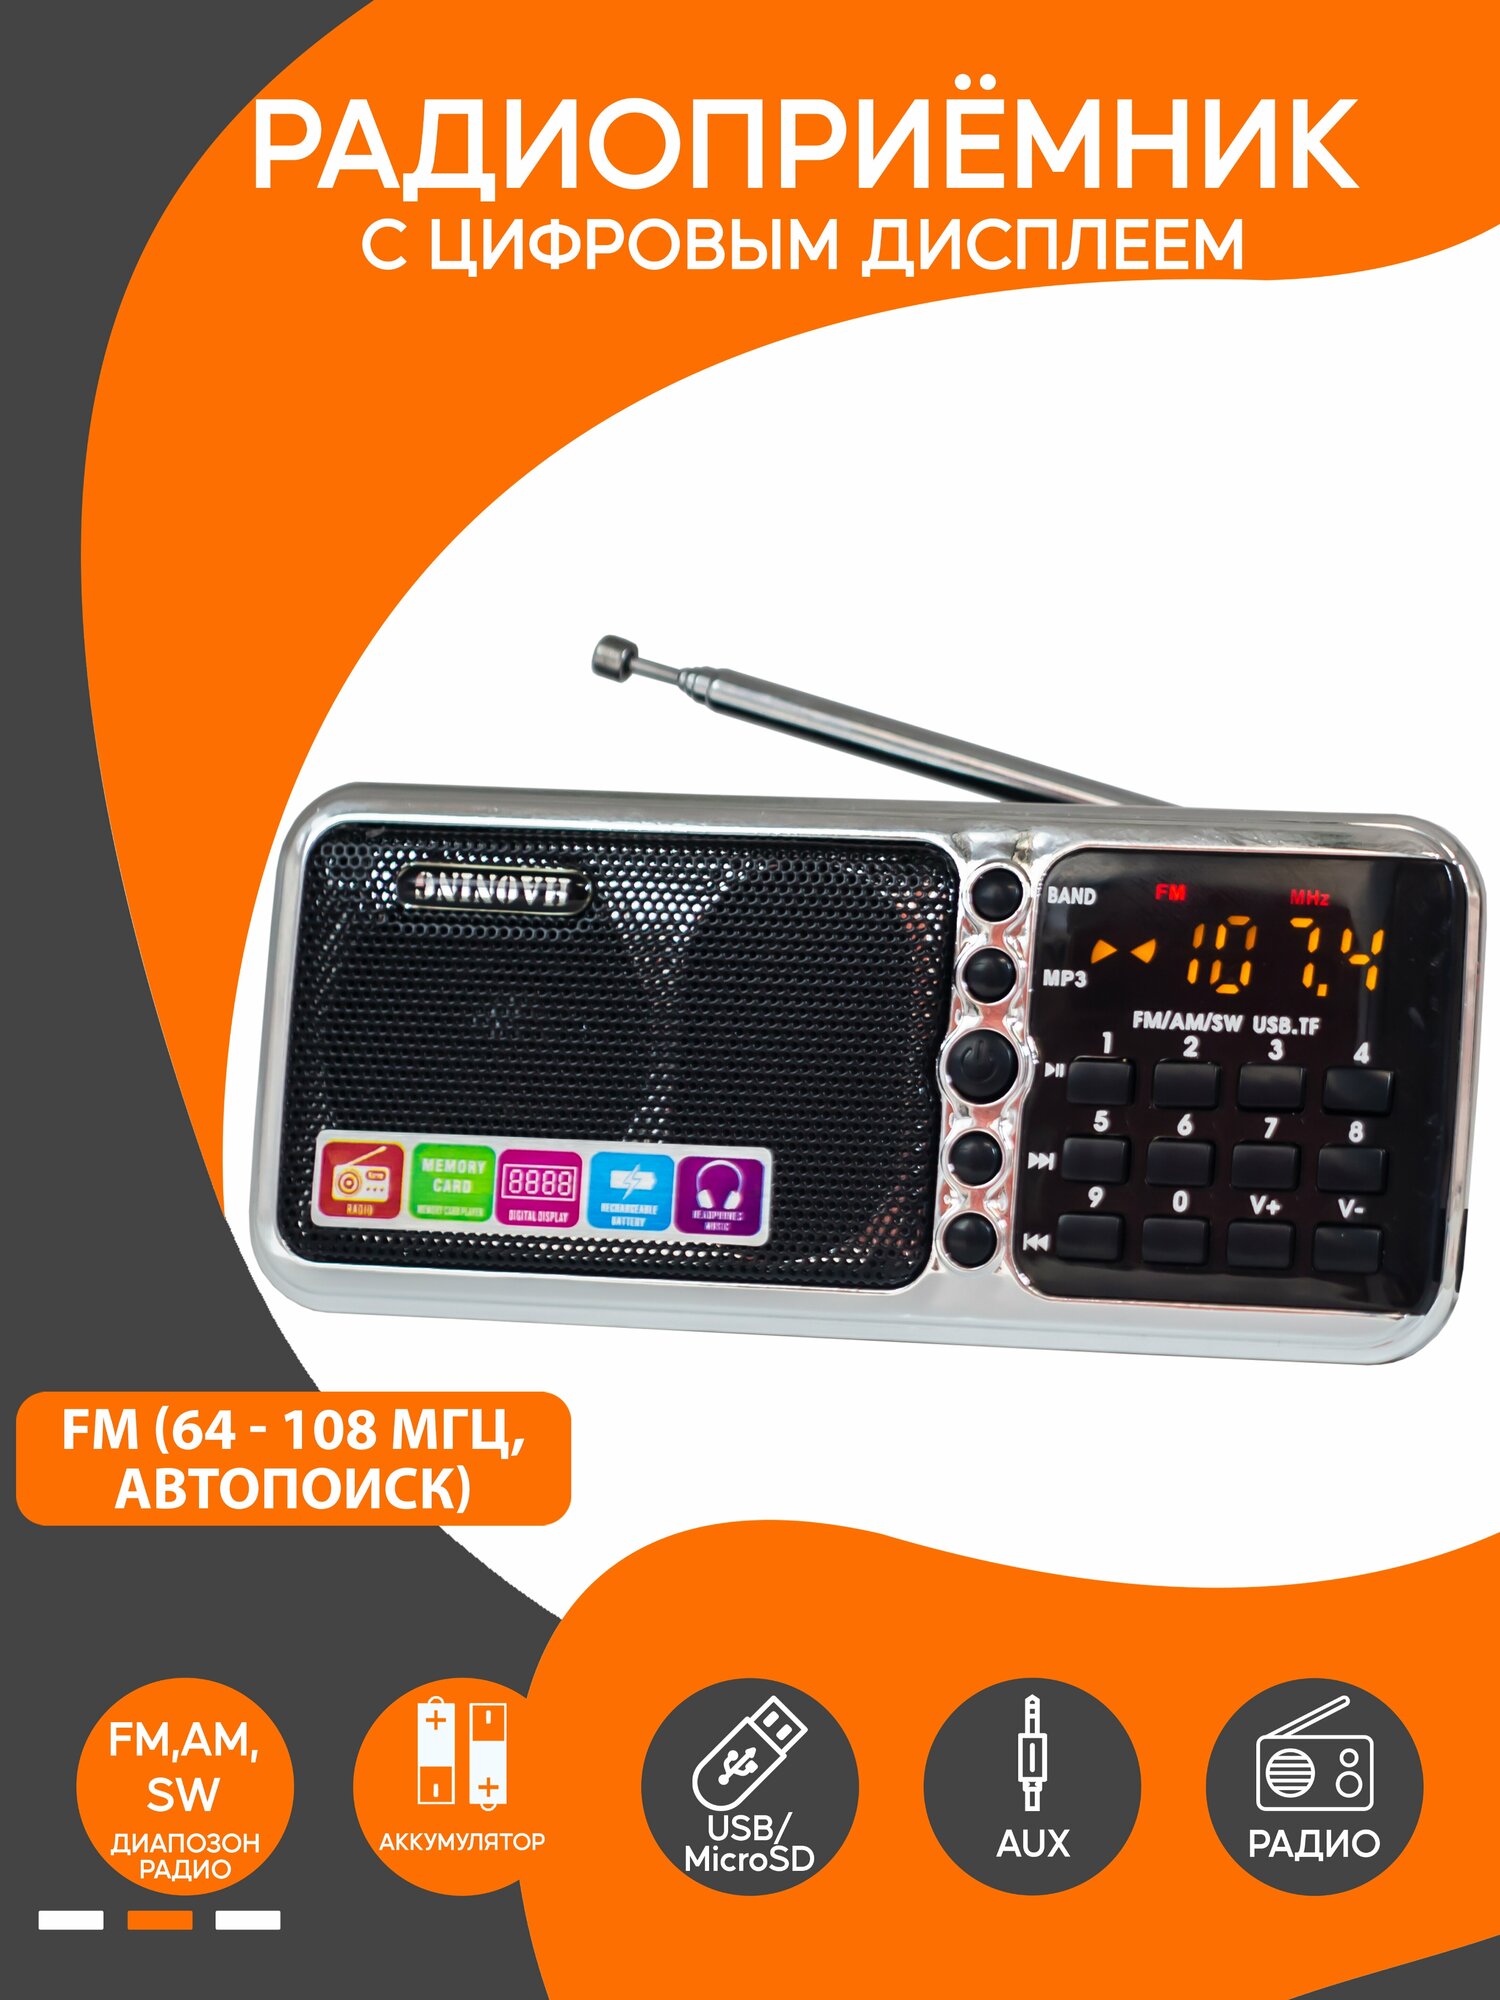 Радиоприемник высокочувствительный FM AM SW с LED дисплеем компактный